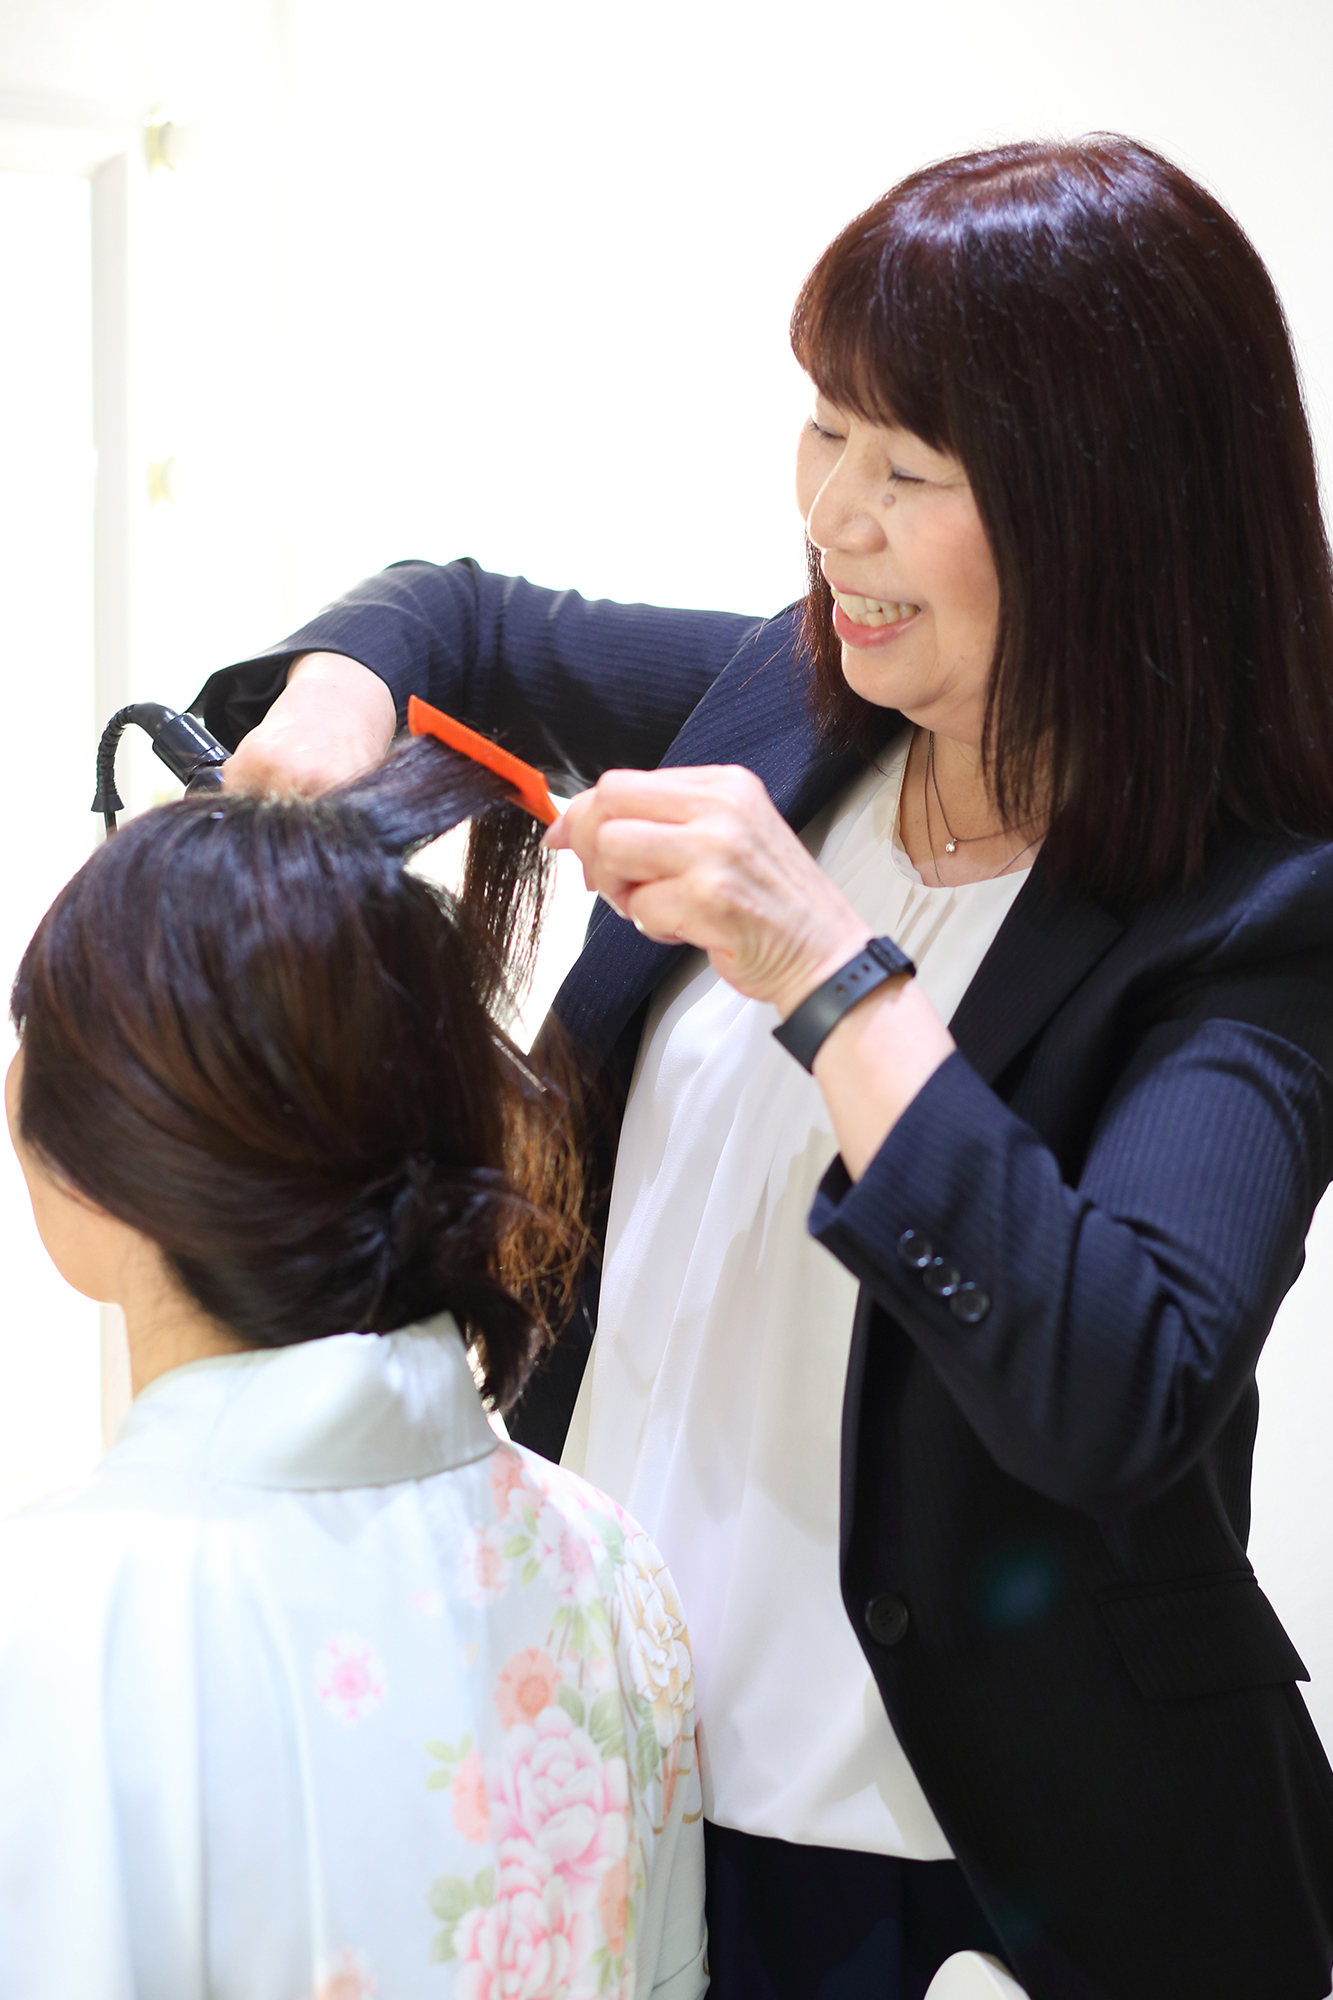 Hadano Yokoがお客様のヘアセットをしている写真